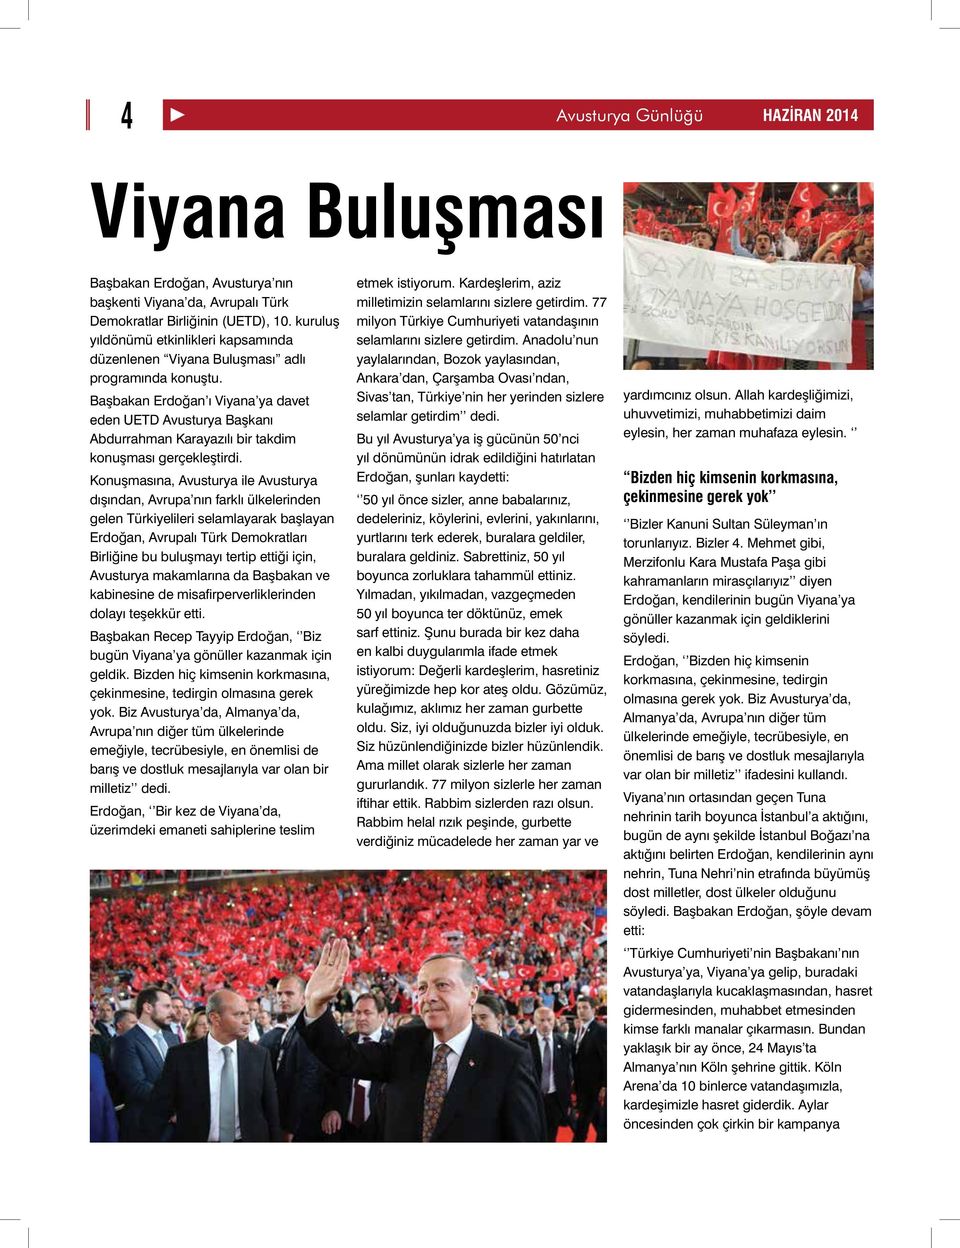 Başbakan Erdoğan ı Viyana ya davet eden UETD Avusturya Başkanı Abdurrahman Karayazılı bir takdim konuşması gerçekleştirdi.